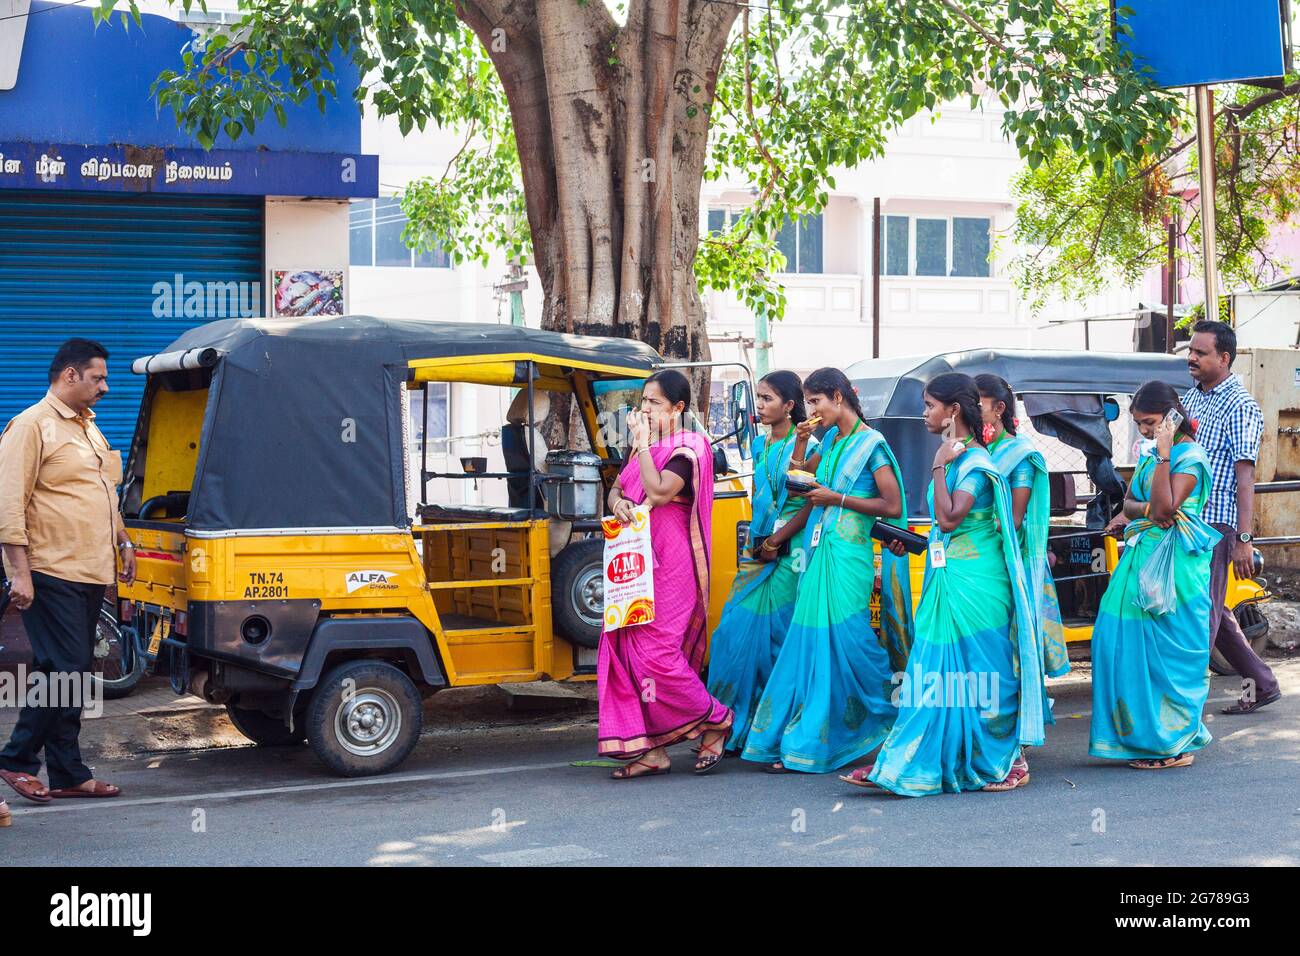 Eine Gruppe attraktiver indischer College-Studenten, die in gleichfarbigen blau-grünen Saris gekleidet sind, laufen an geparkten Auto-Rikschas, Kanyakumari, Tamil Nadu, Indien, vorbei Stockfoto